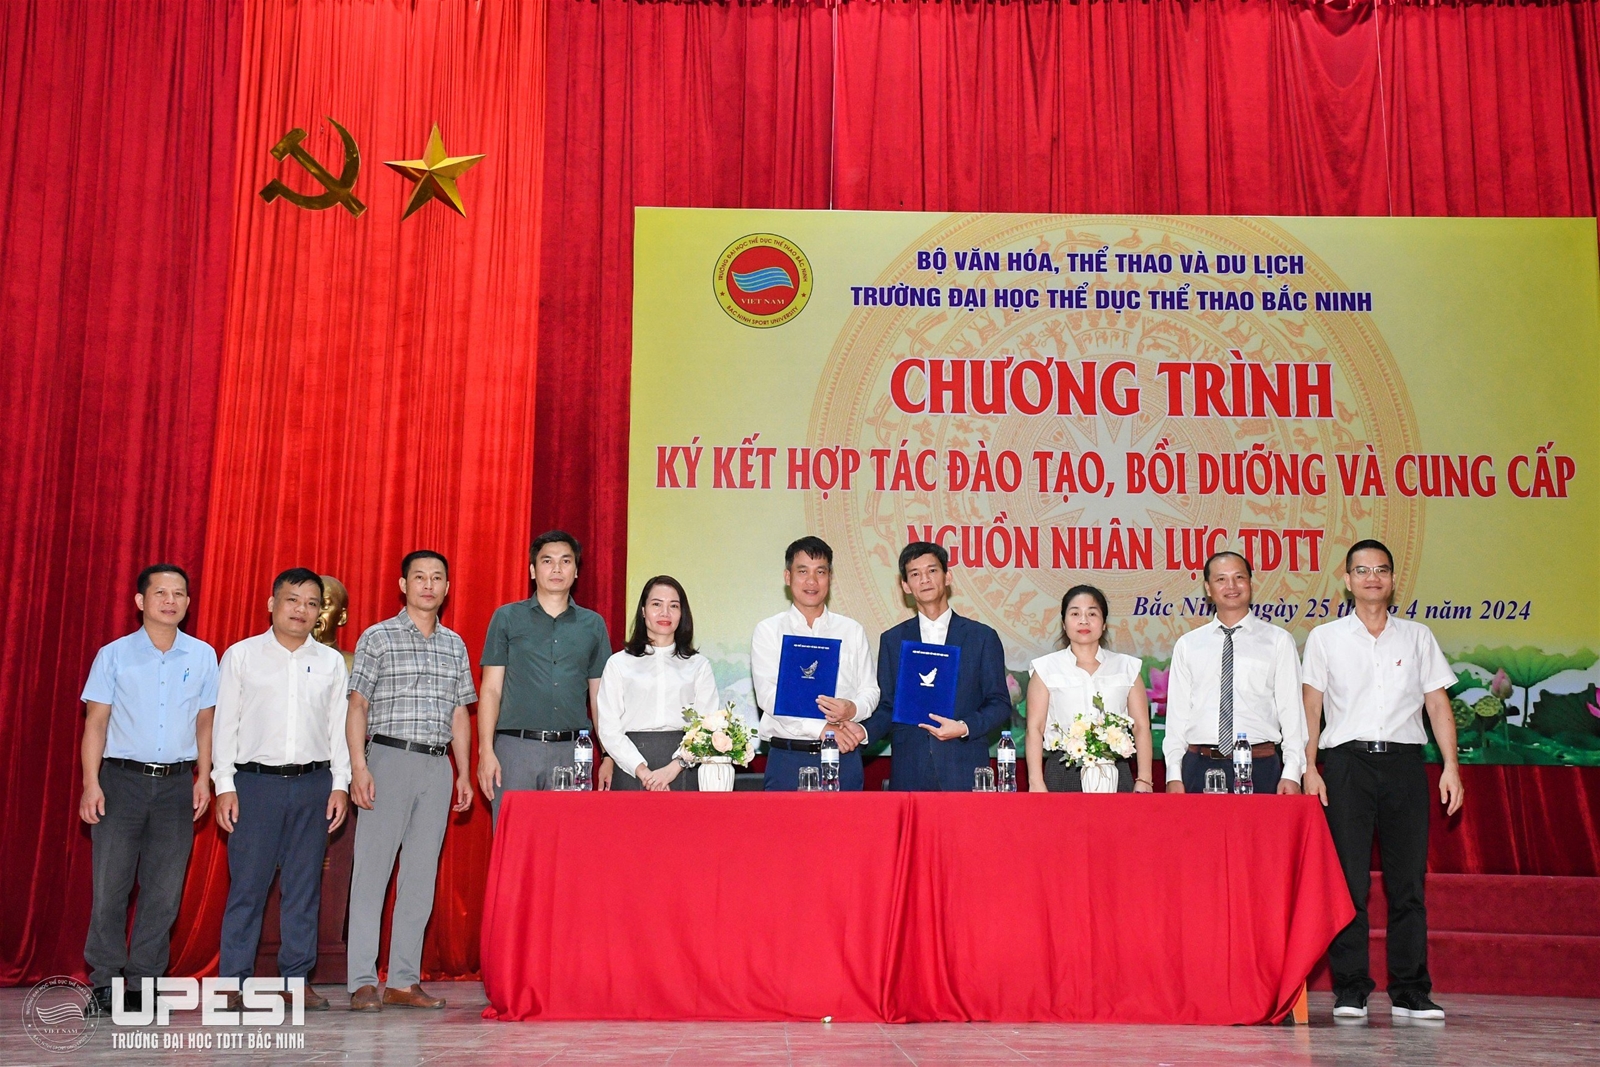 Chương trình ký kết hợp tác đào tạo, bồi dưỡng và cung cấp nguồn nhân lực TDTT tại Trường Đại học TDTT Bắc Ninh năm 2024